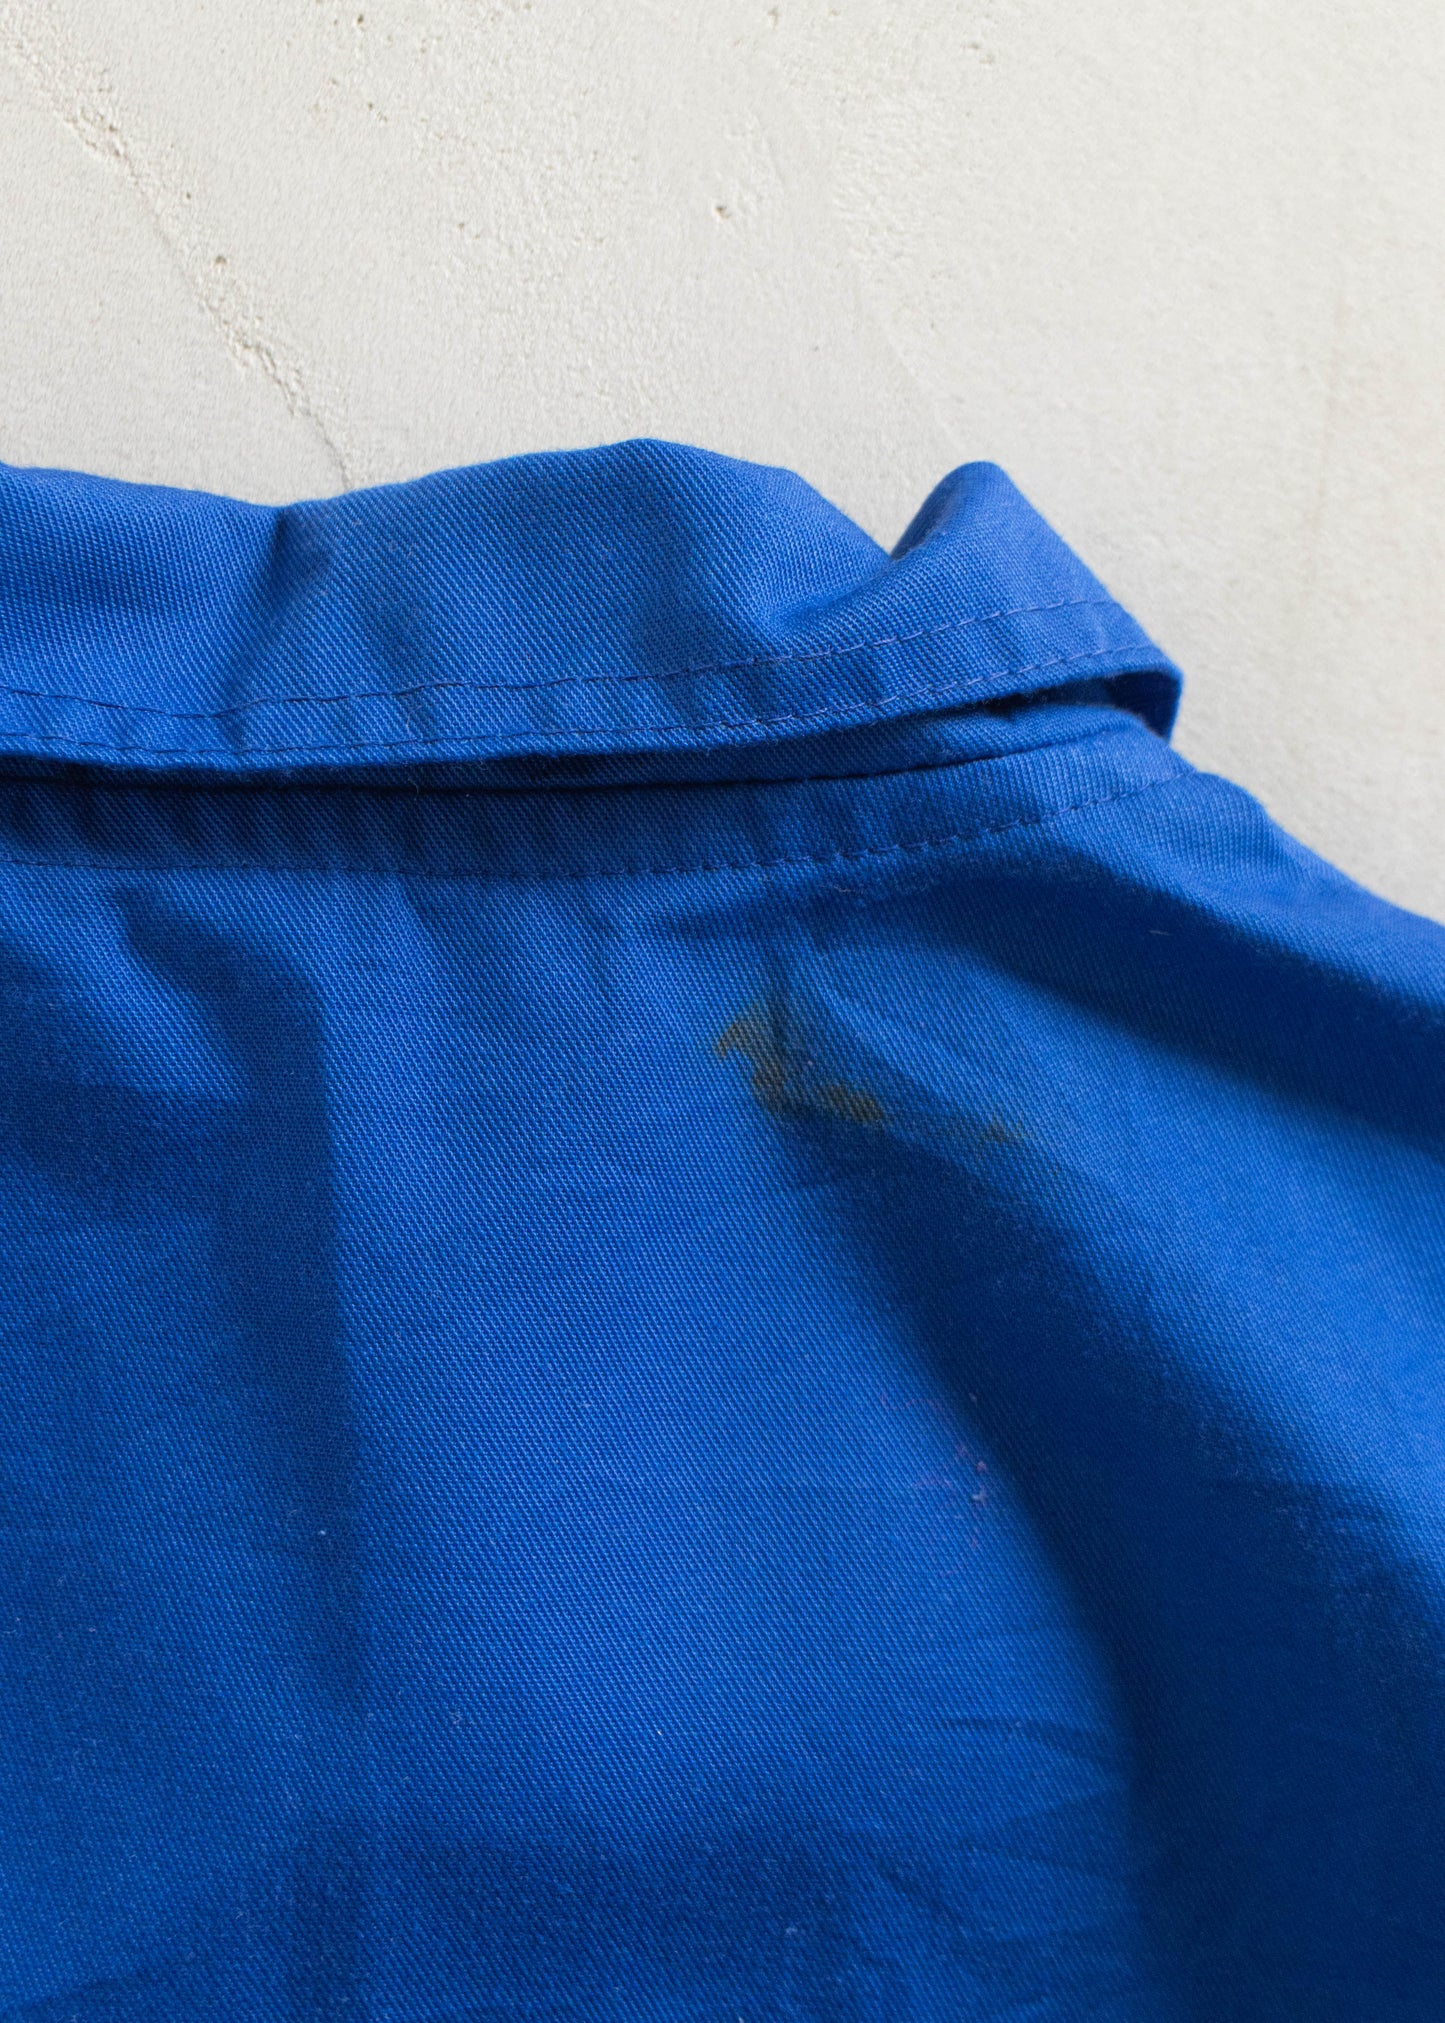 Vintage 1980s Bleu de Travail Workwear Chore Jacket M/L